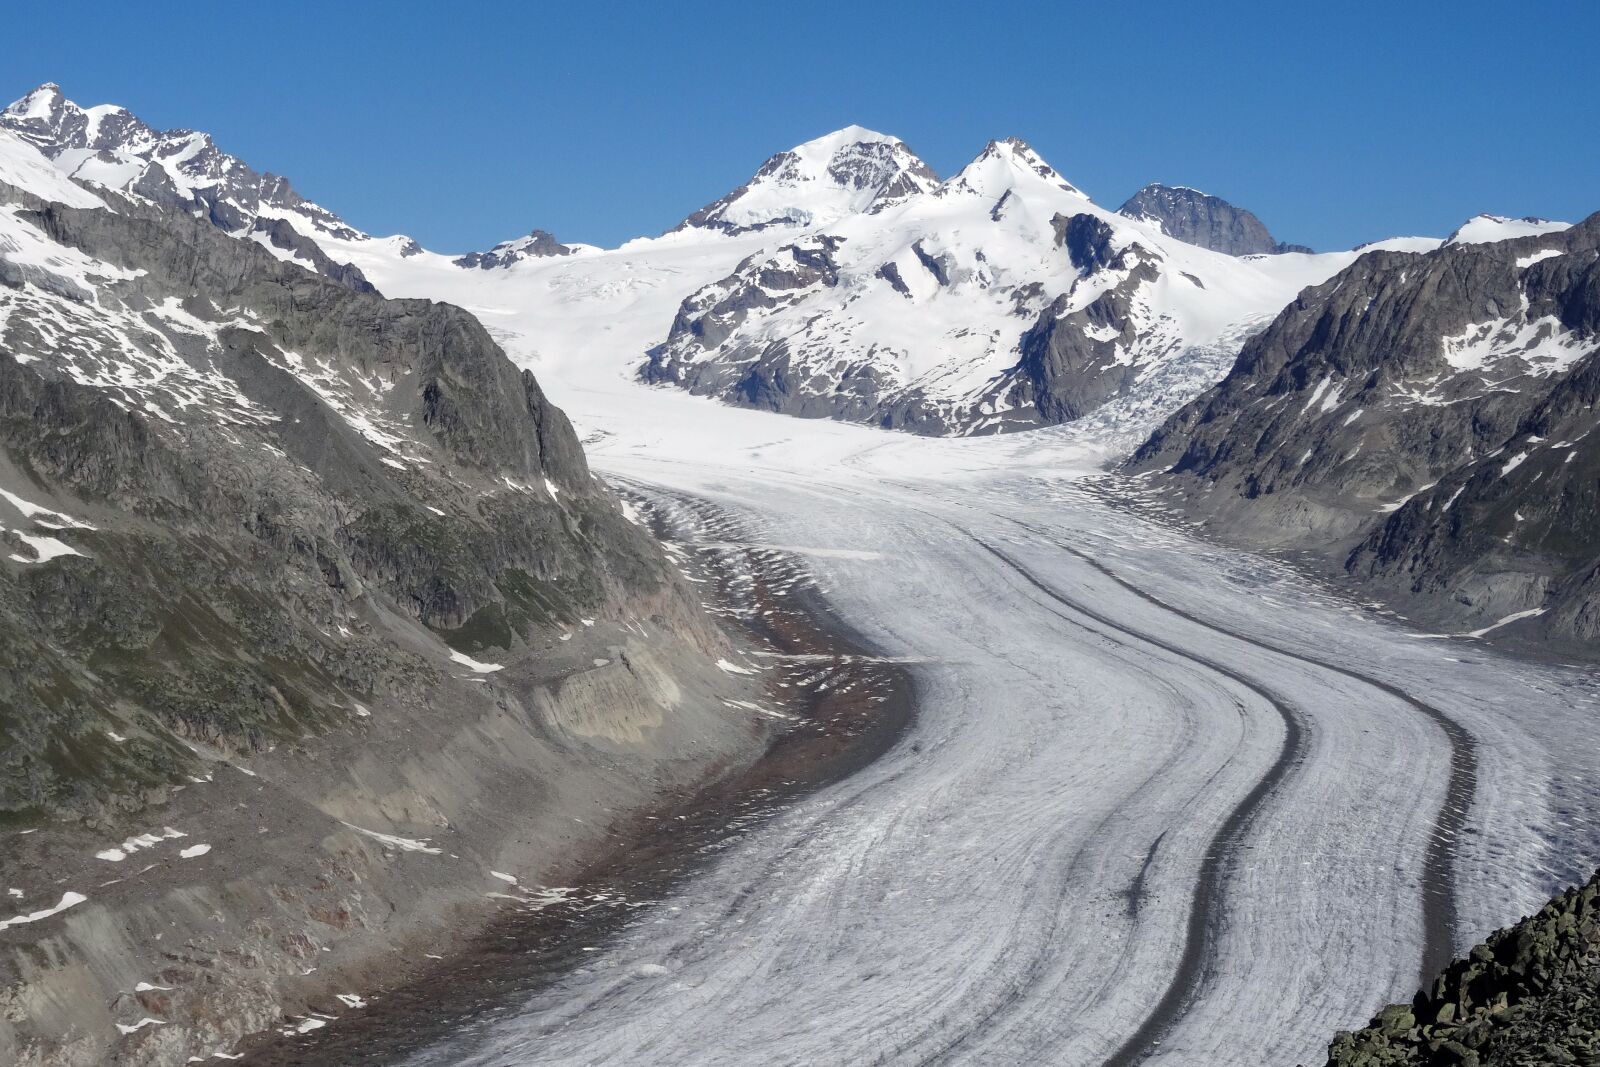 Sony Cyber-shot DSC-HX50V sample photo. Glacier, aletsch glacier, valais photography